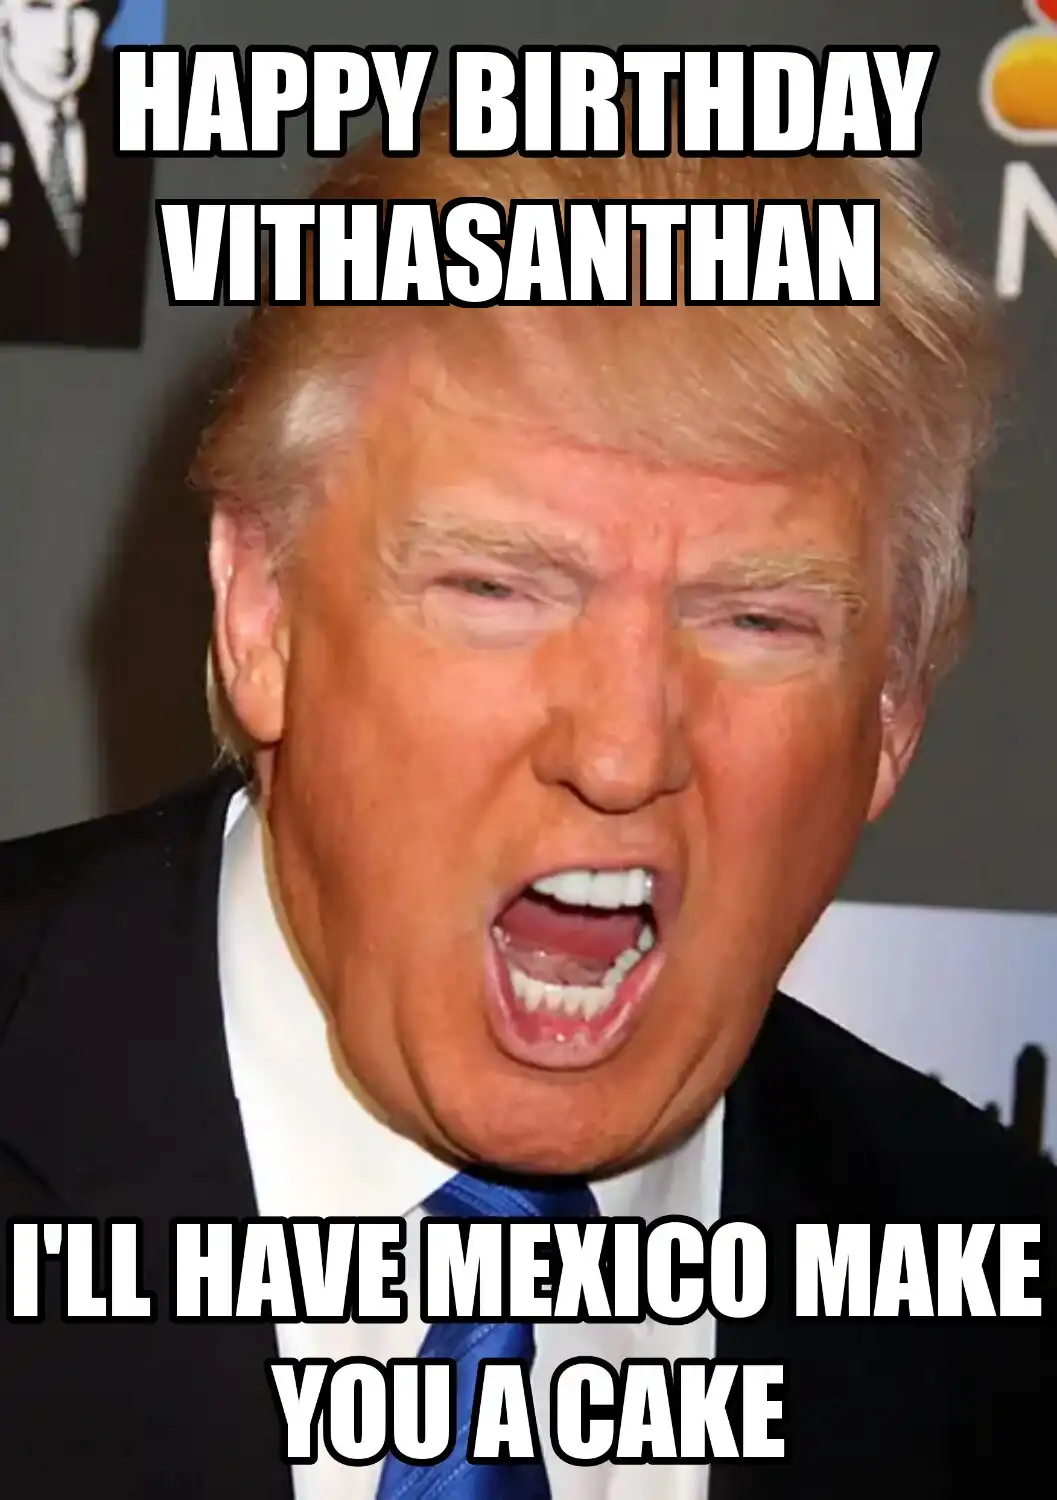 Happy Birthday Vithasanthan Mexico Make You A Cake Meme